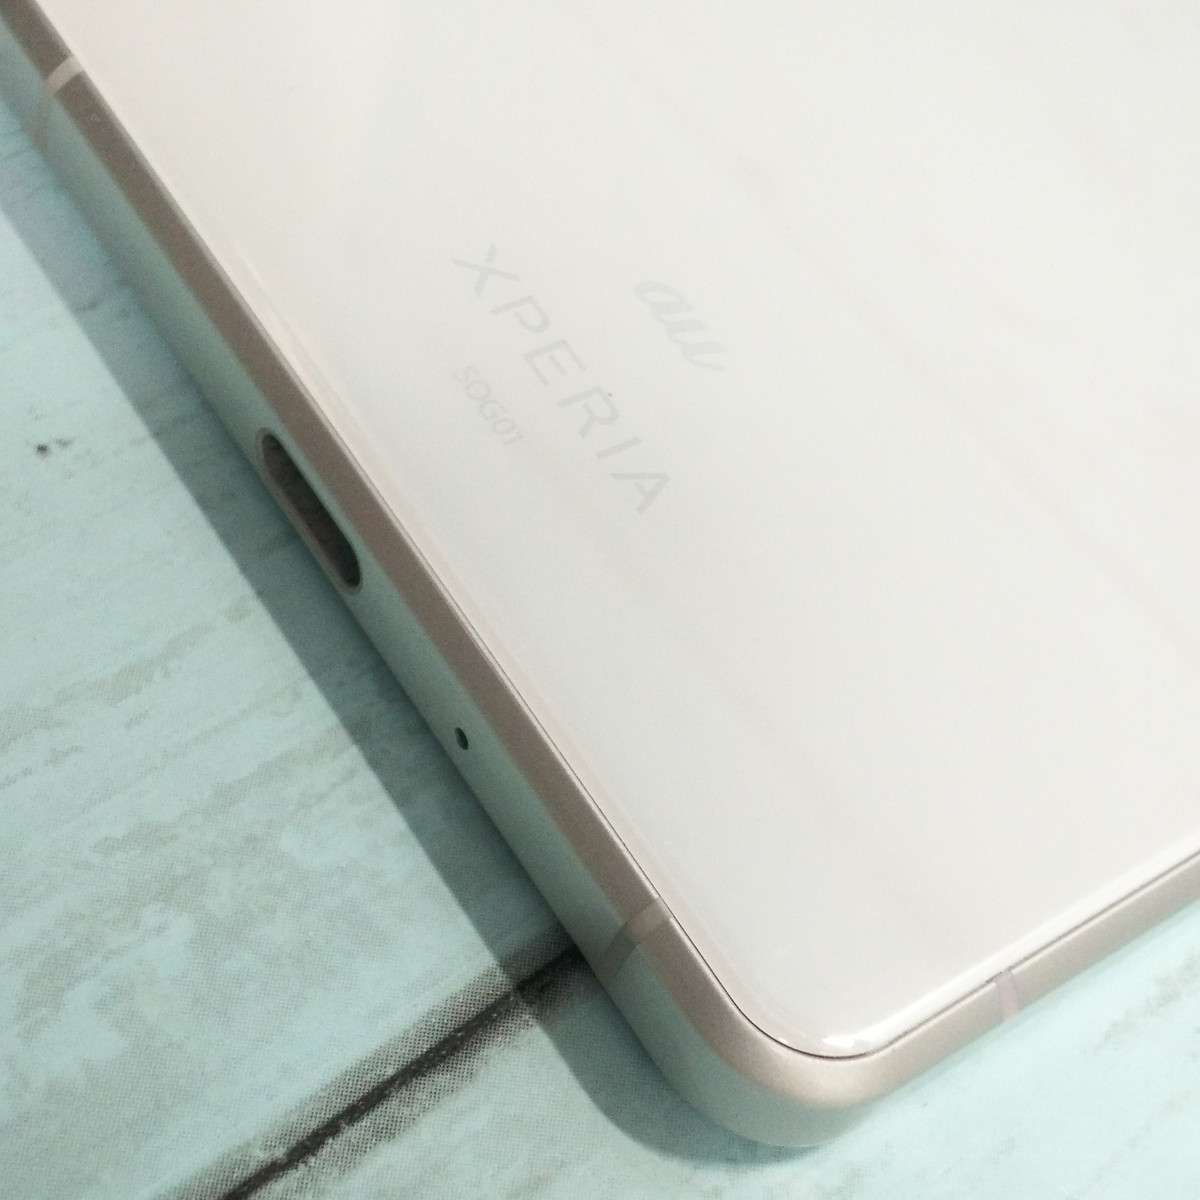 Xperia II SOG01 ホワイト au 本体 白ロム SIMロック解除済み SIMフリー 美品 854159 